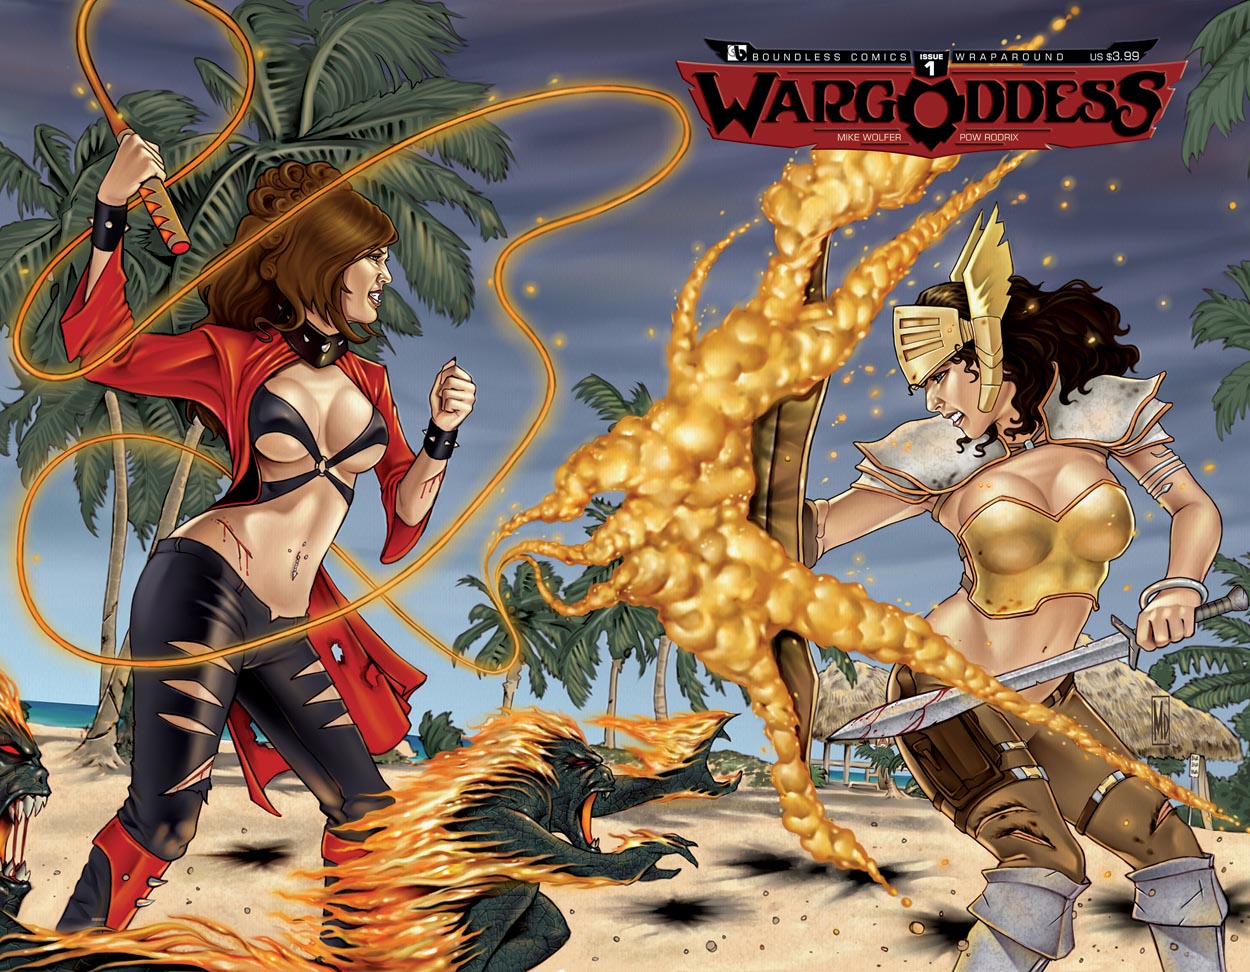 War Goddess HD wallpapers, Desktop wallpaper - most viewed